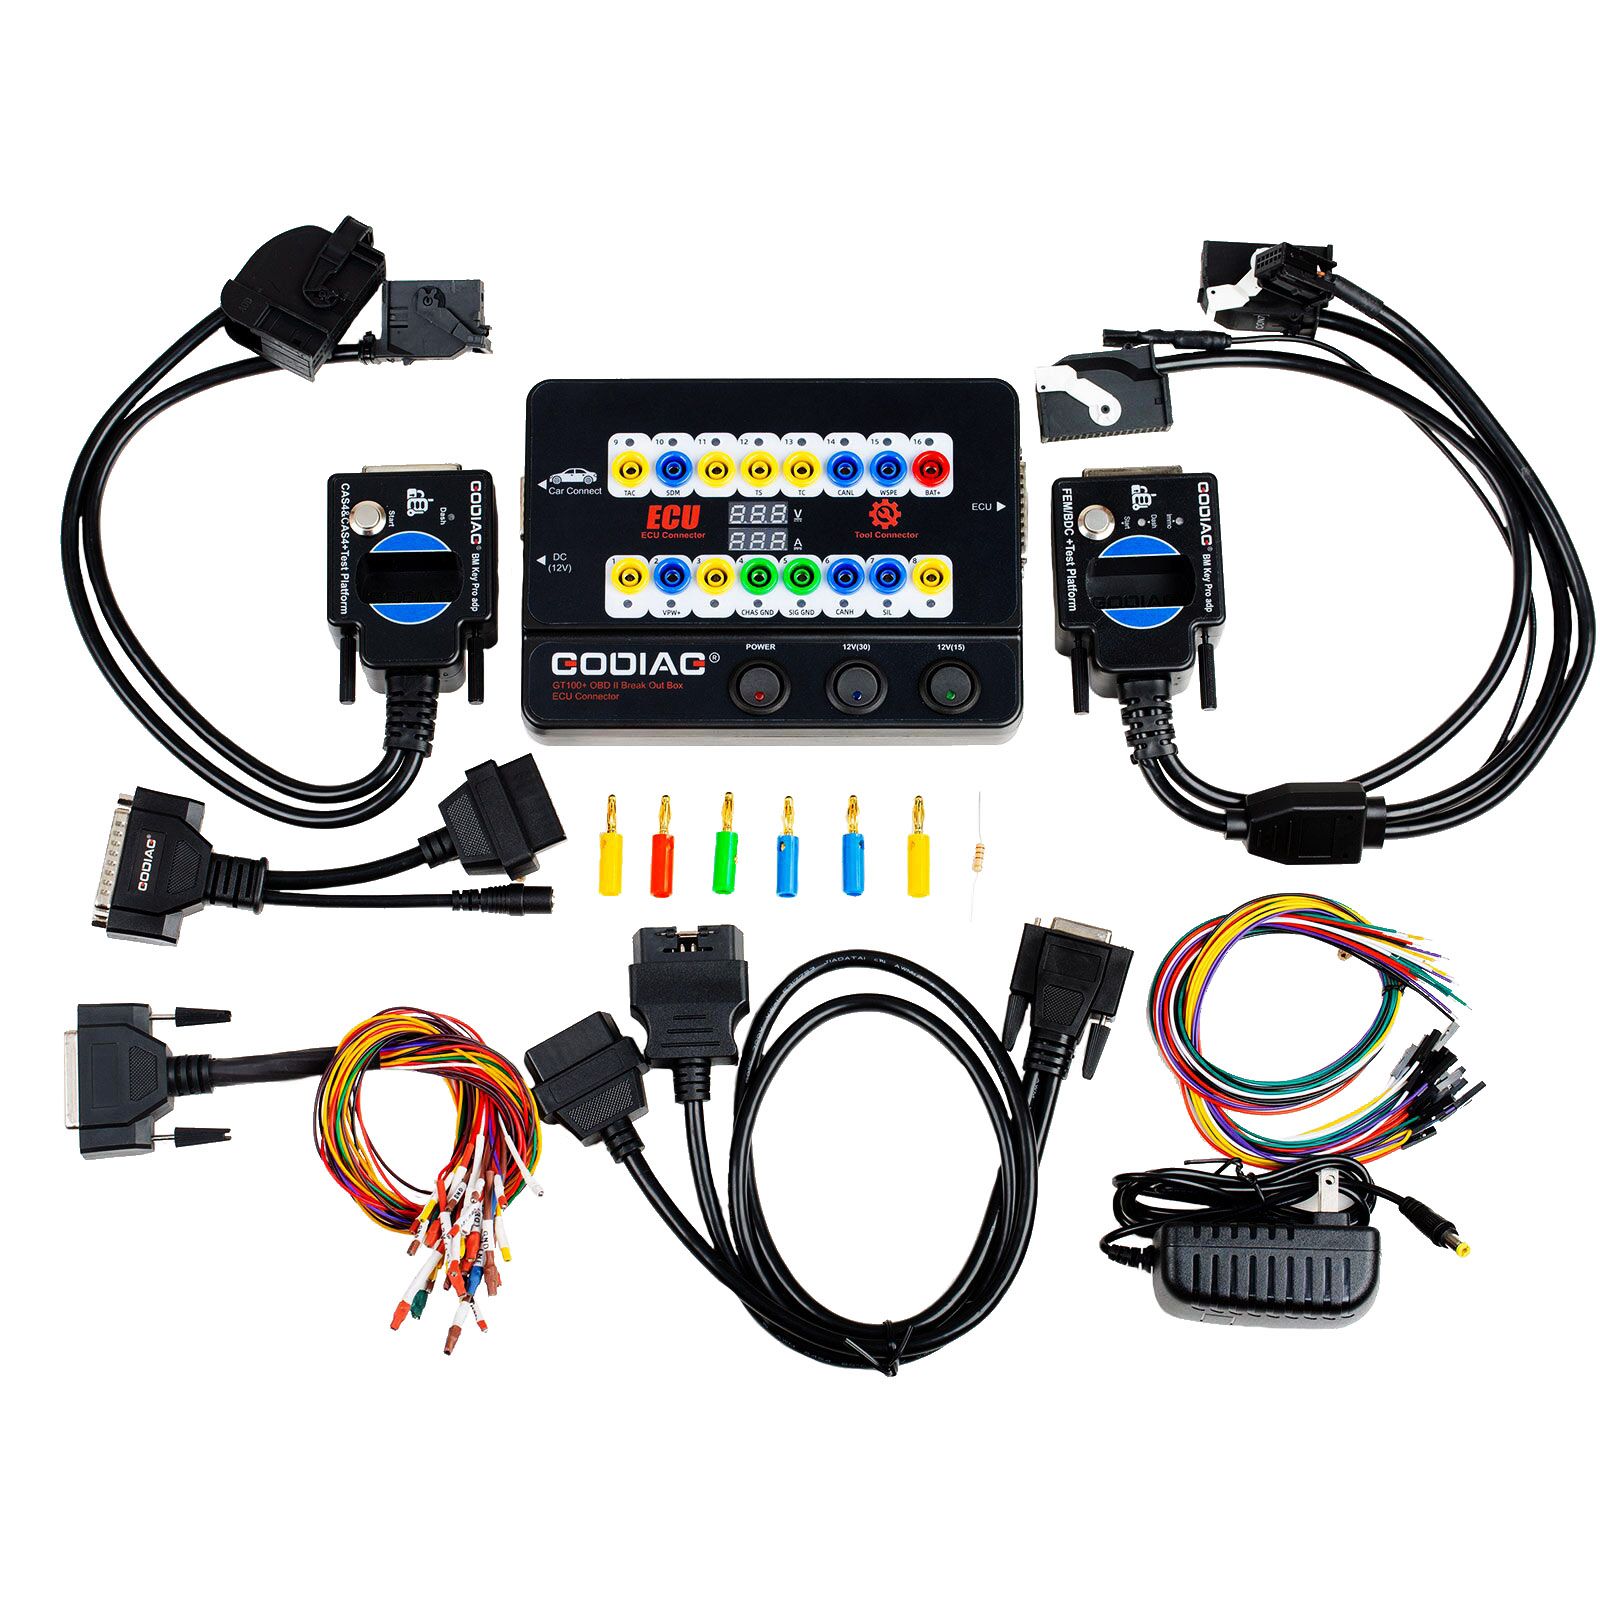 Godiag gt100 + gt100 pro caja de desconexión herramienta ecu, equipada con BMW cas4 cas4 + y Plataforma de prueba Fem bdc, soporte para la pérdida de todas las llaves